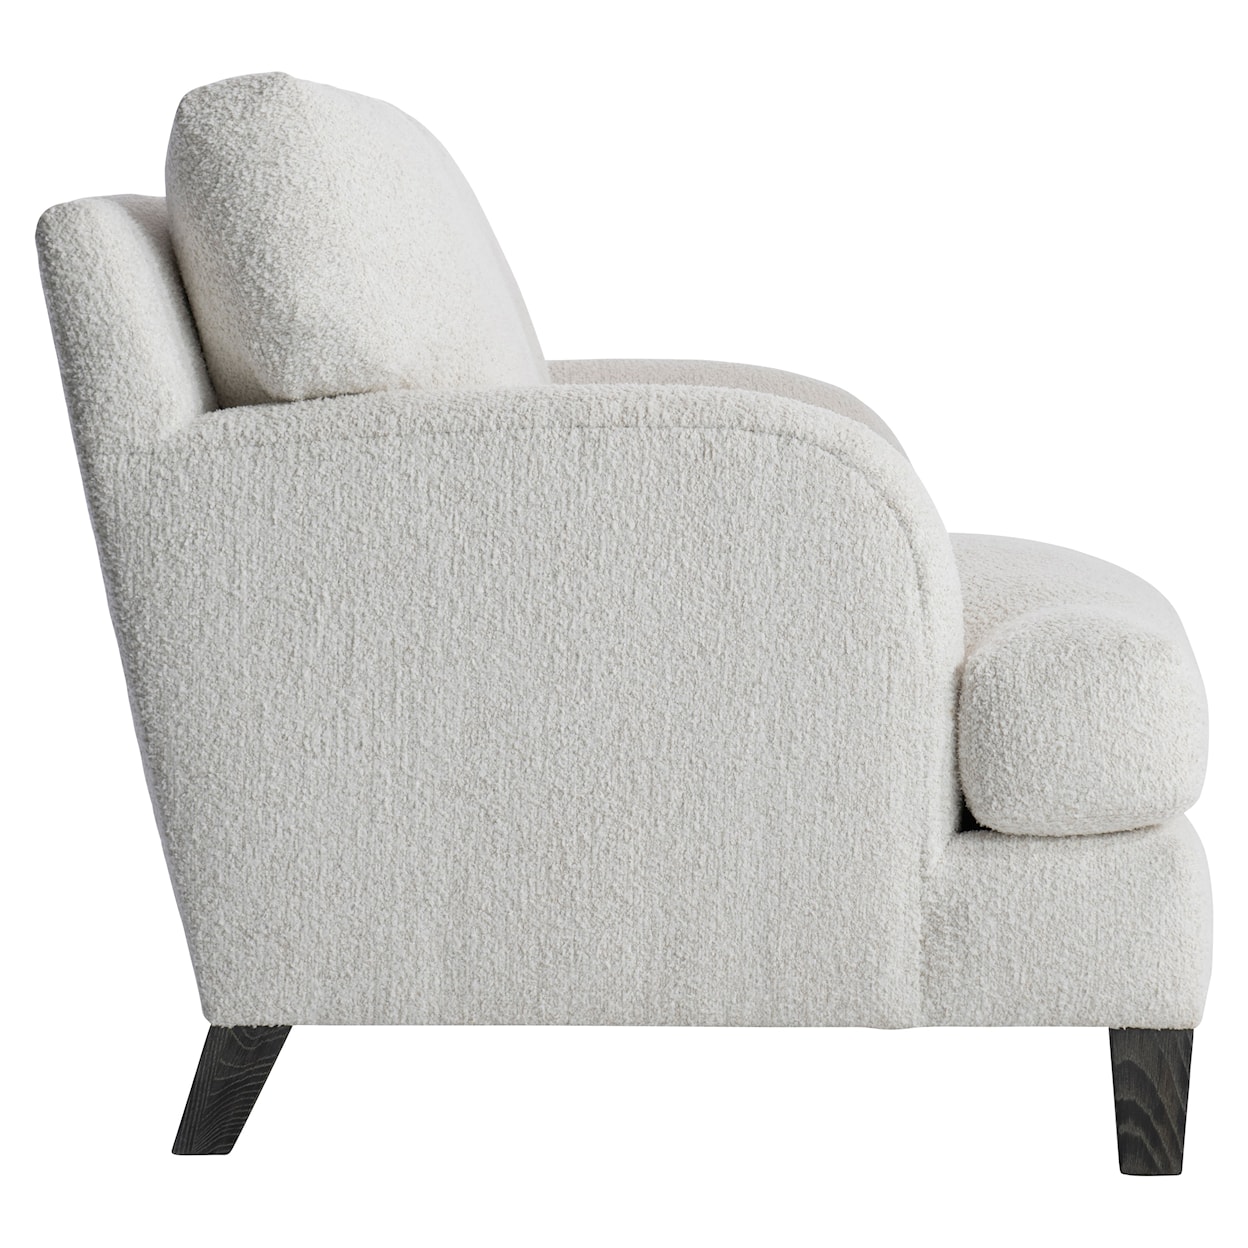 Bernhardt Bernhardt Living Ariel Fabric Chair Without Pillows